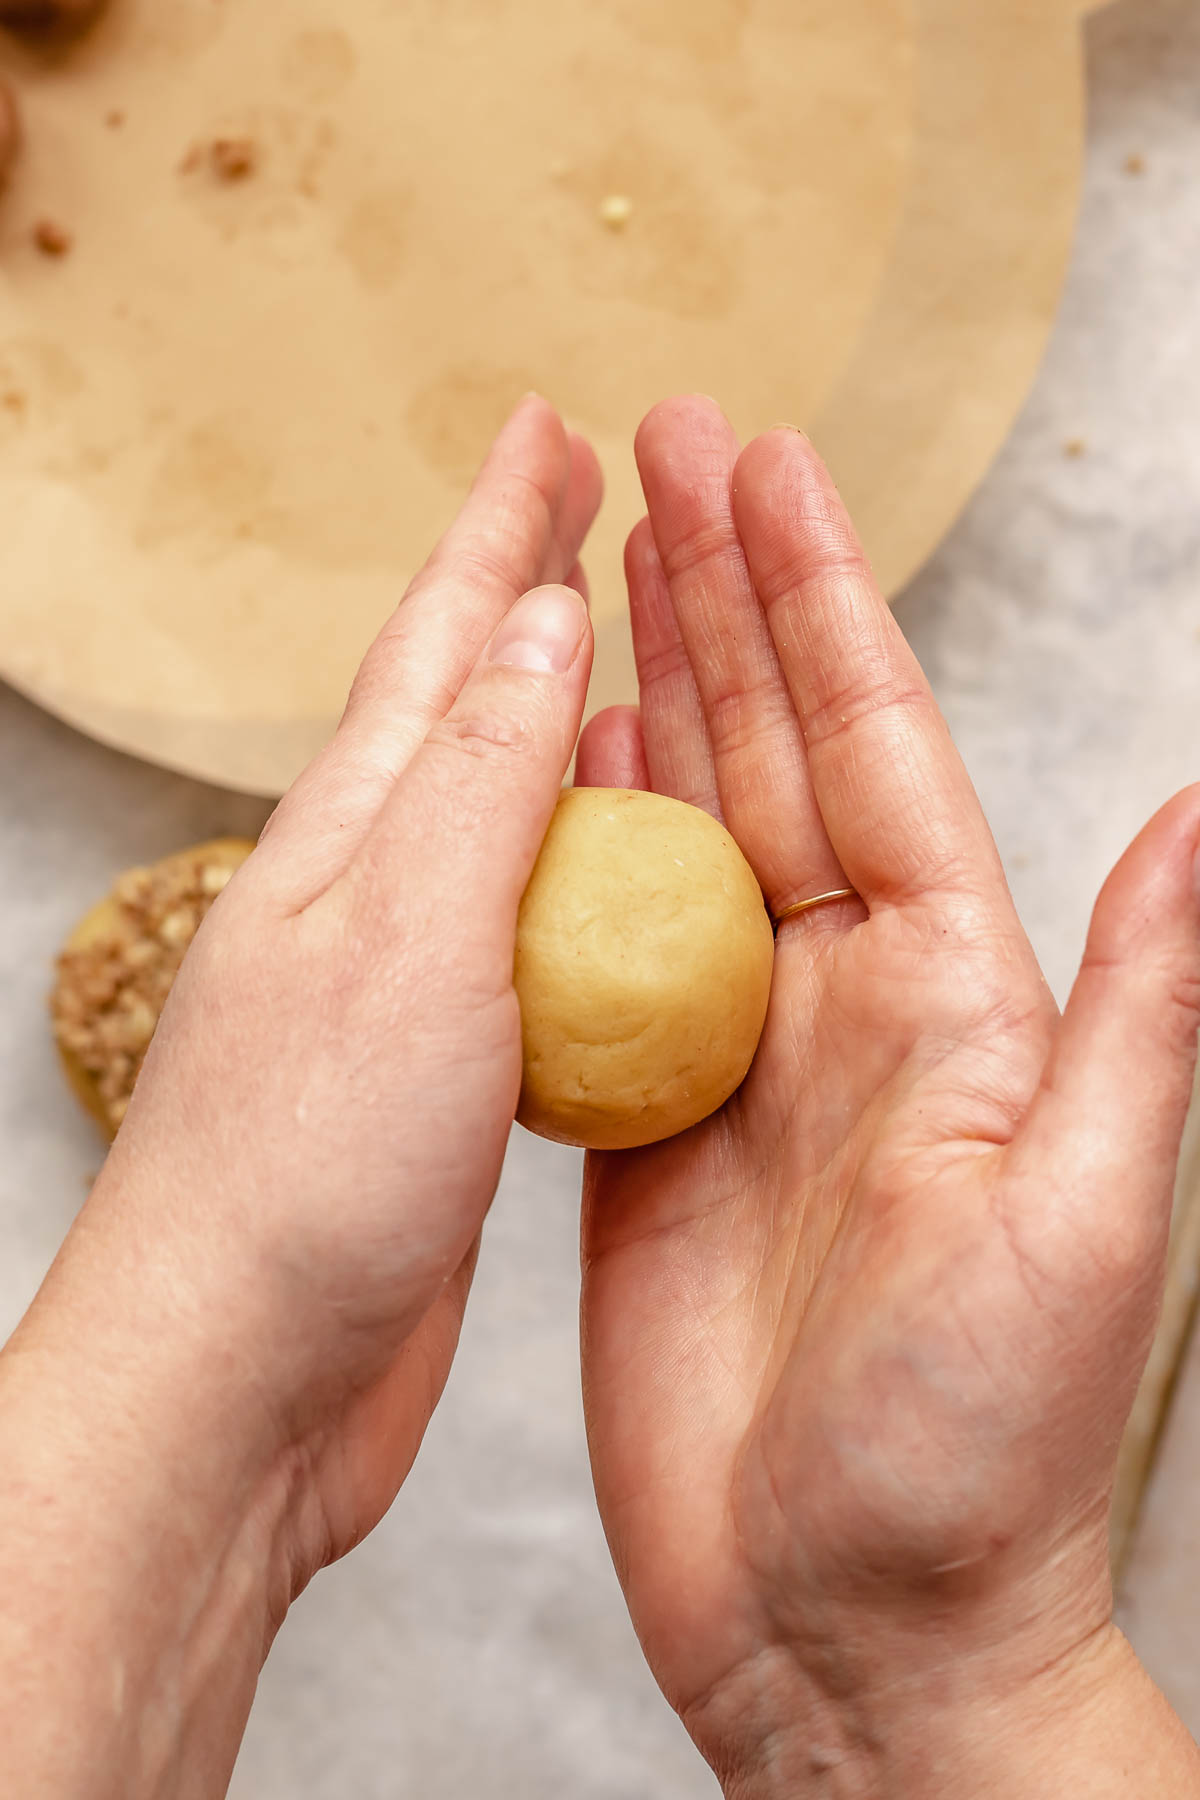 Hands roll a cookie dough ball.